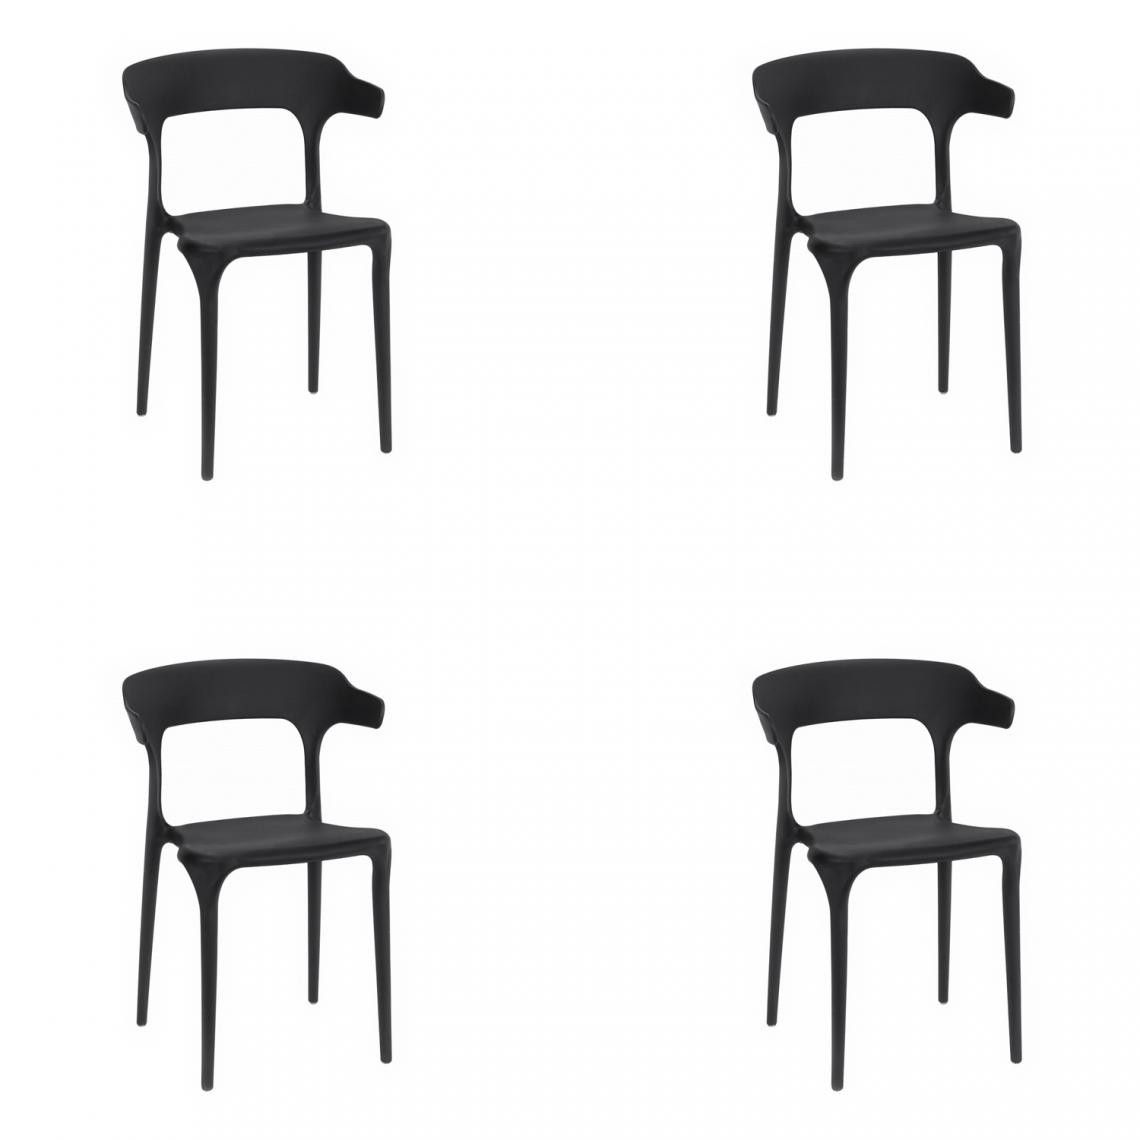 Hucoco - ULMER - Lot de 4 chaises en PP style moderne cuisine - 74.5x49.5x49.5 cm - Chaise de salle à manger - Noir - Chaises